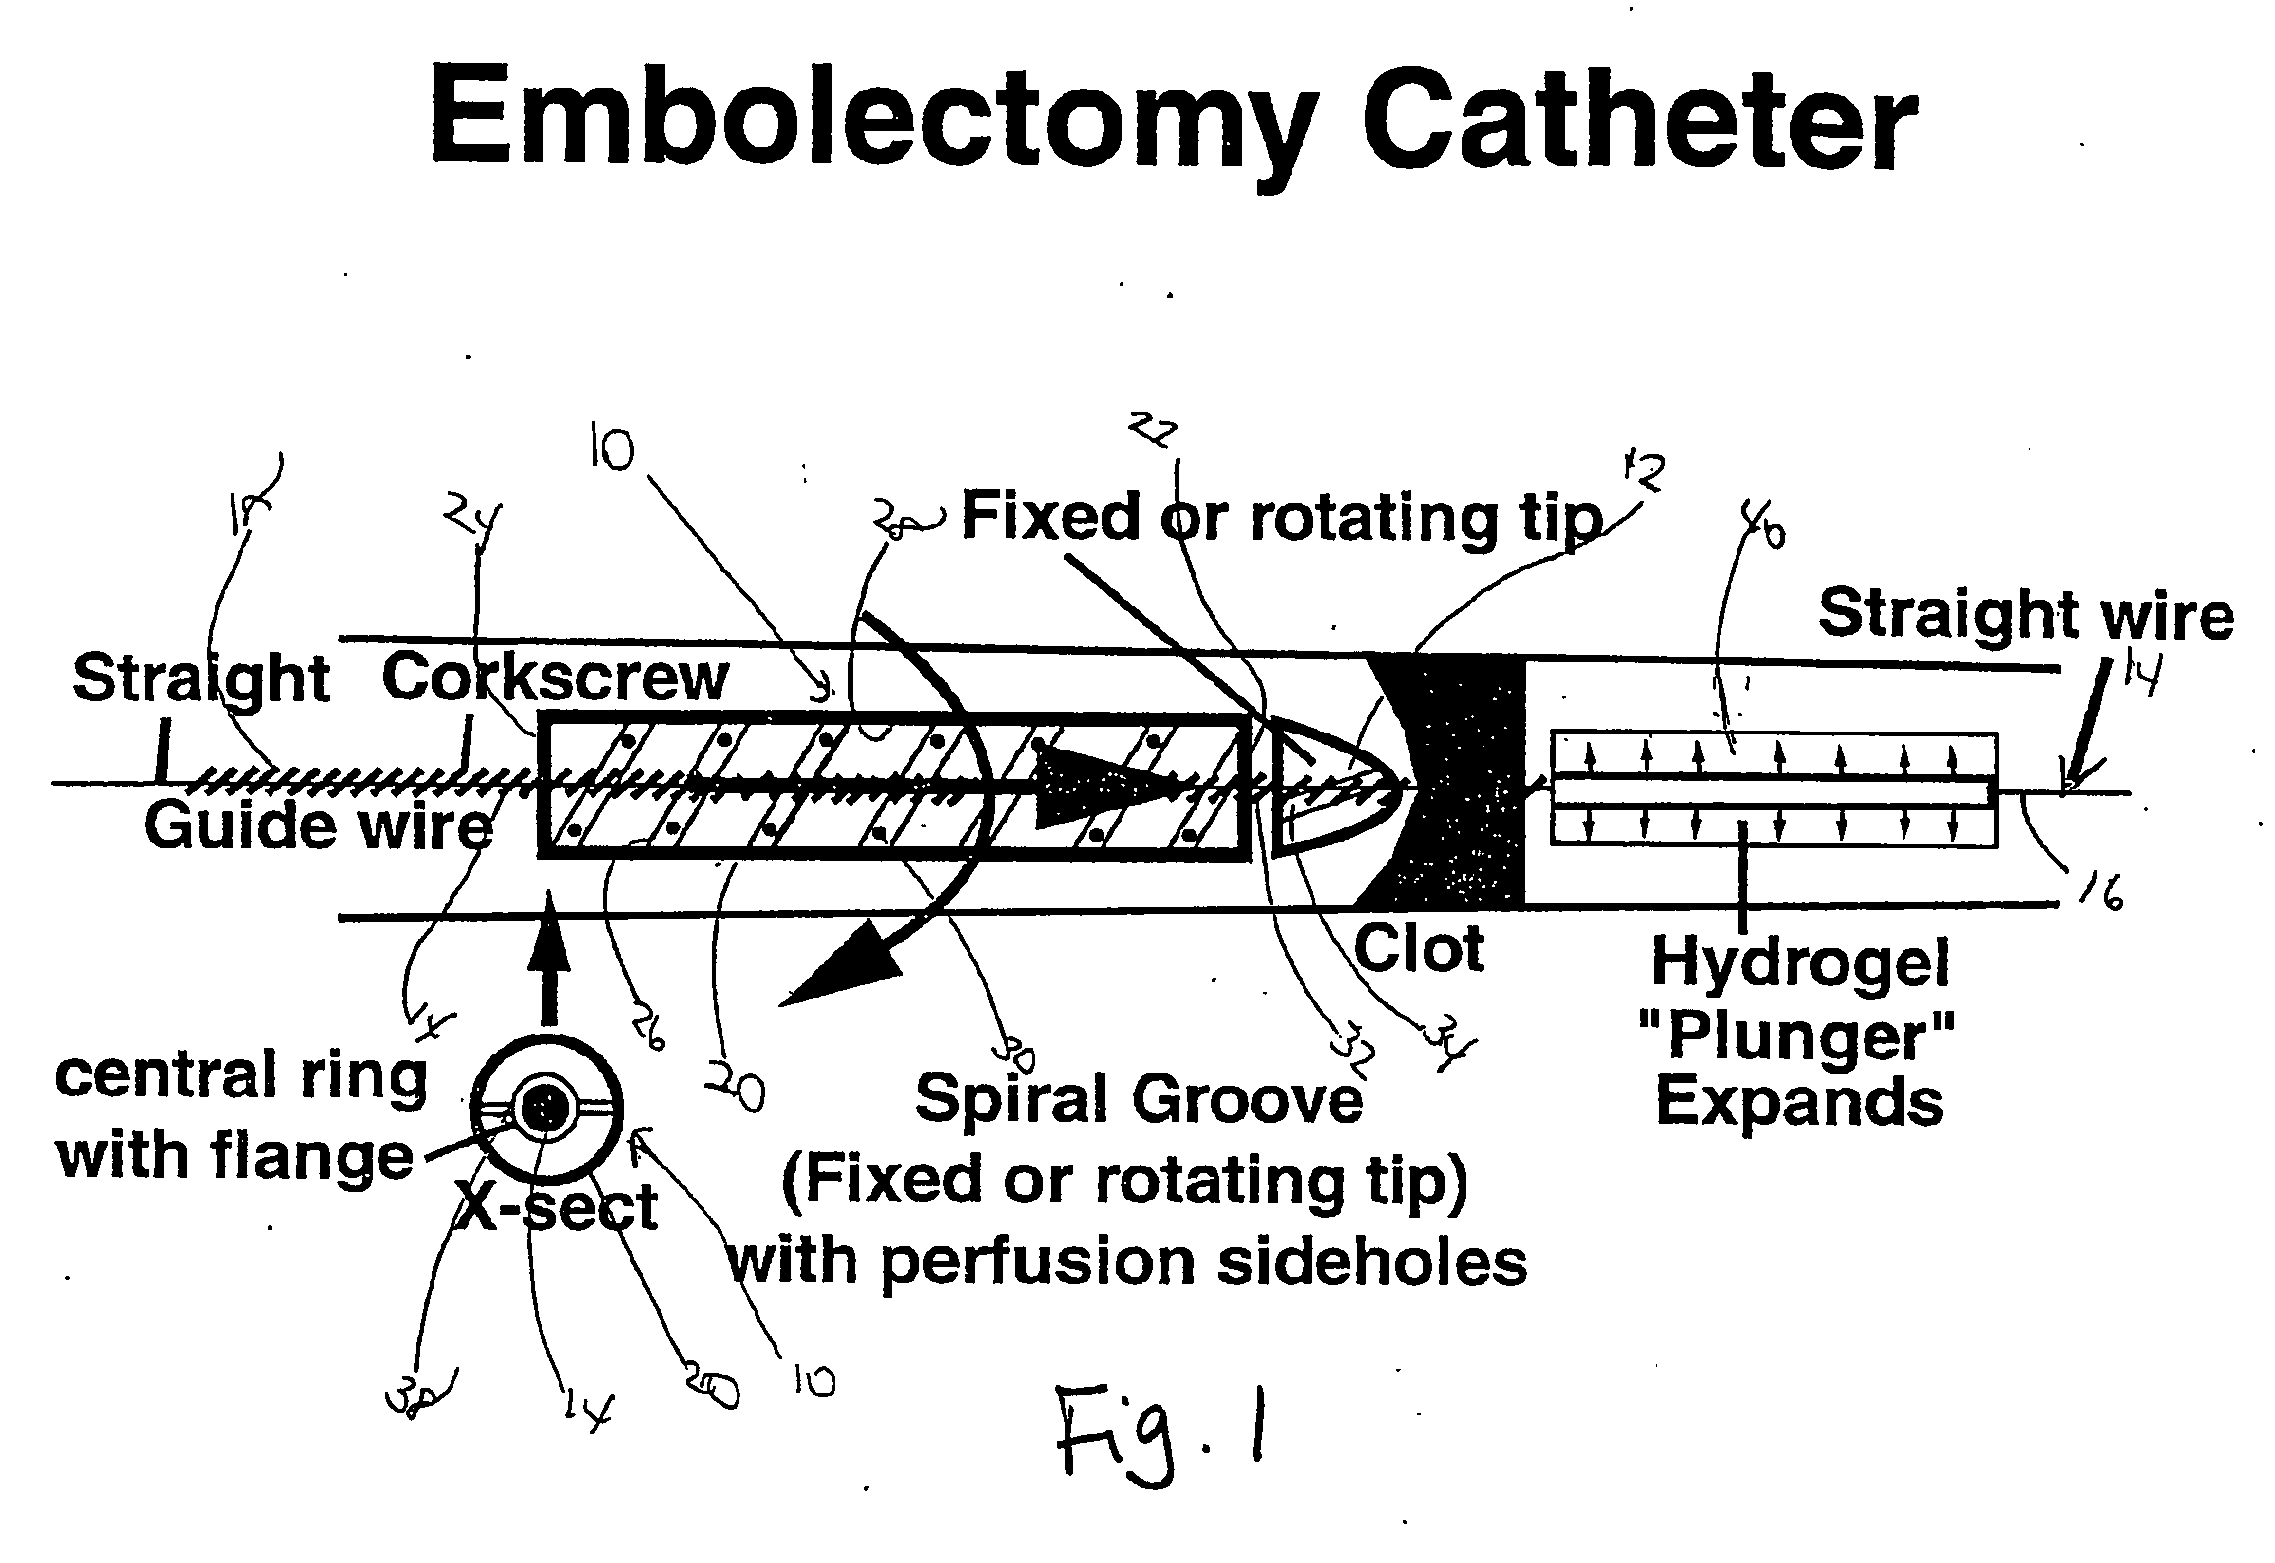 Embolectomy Catheter